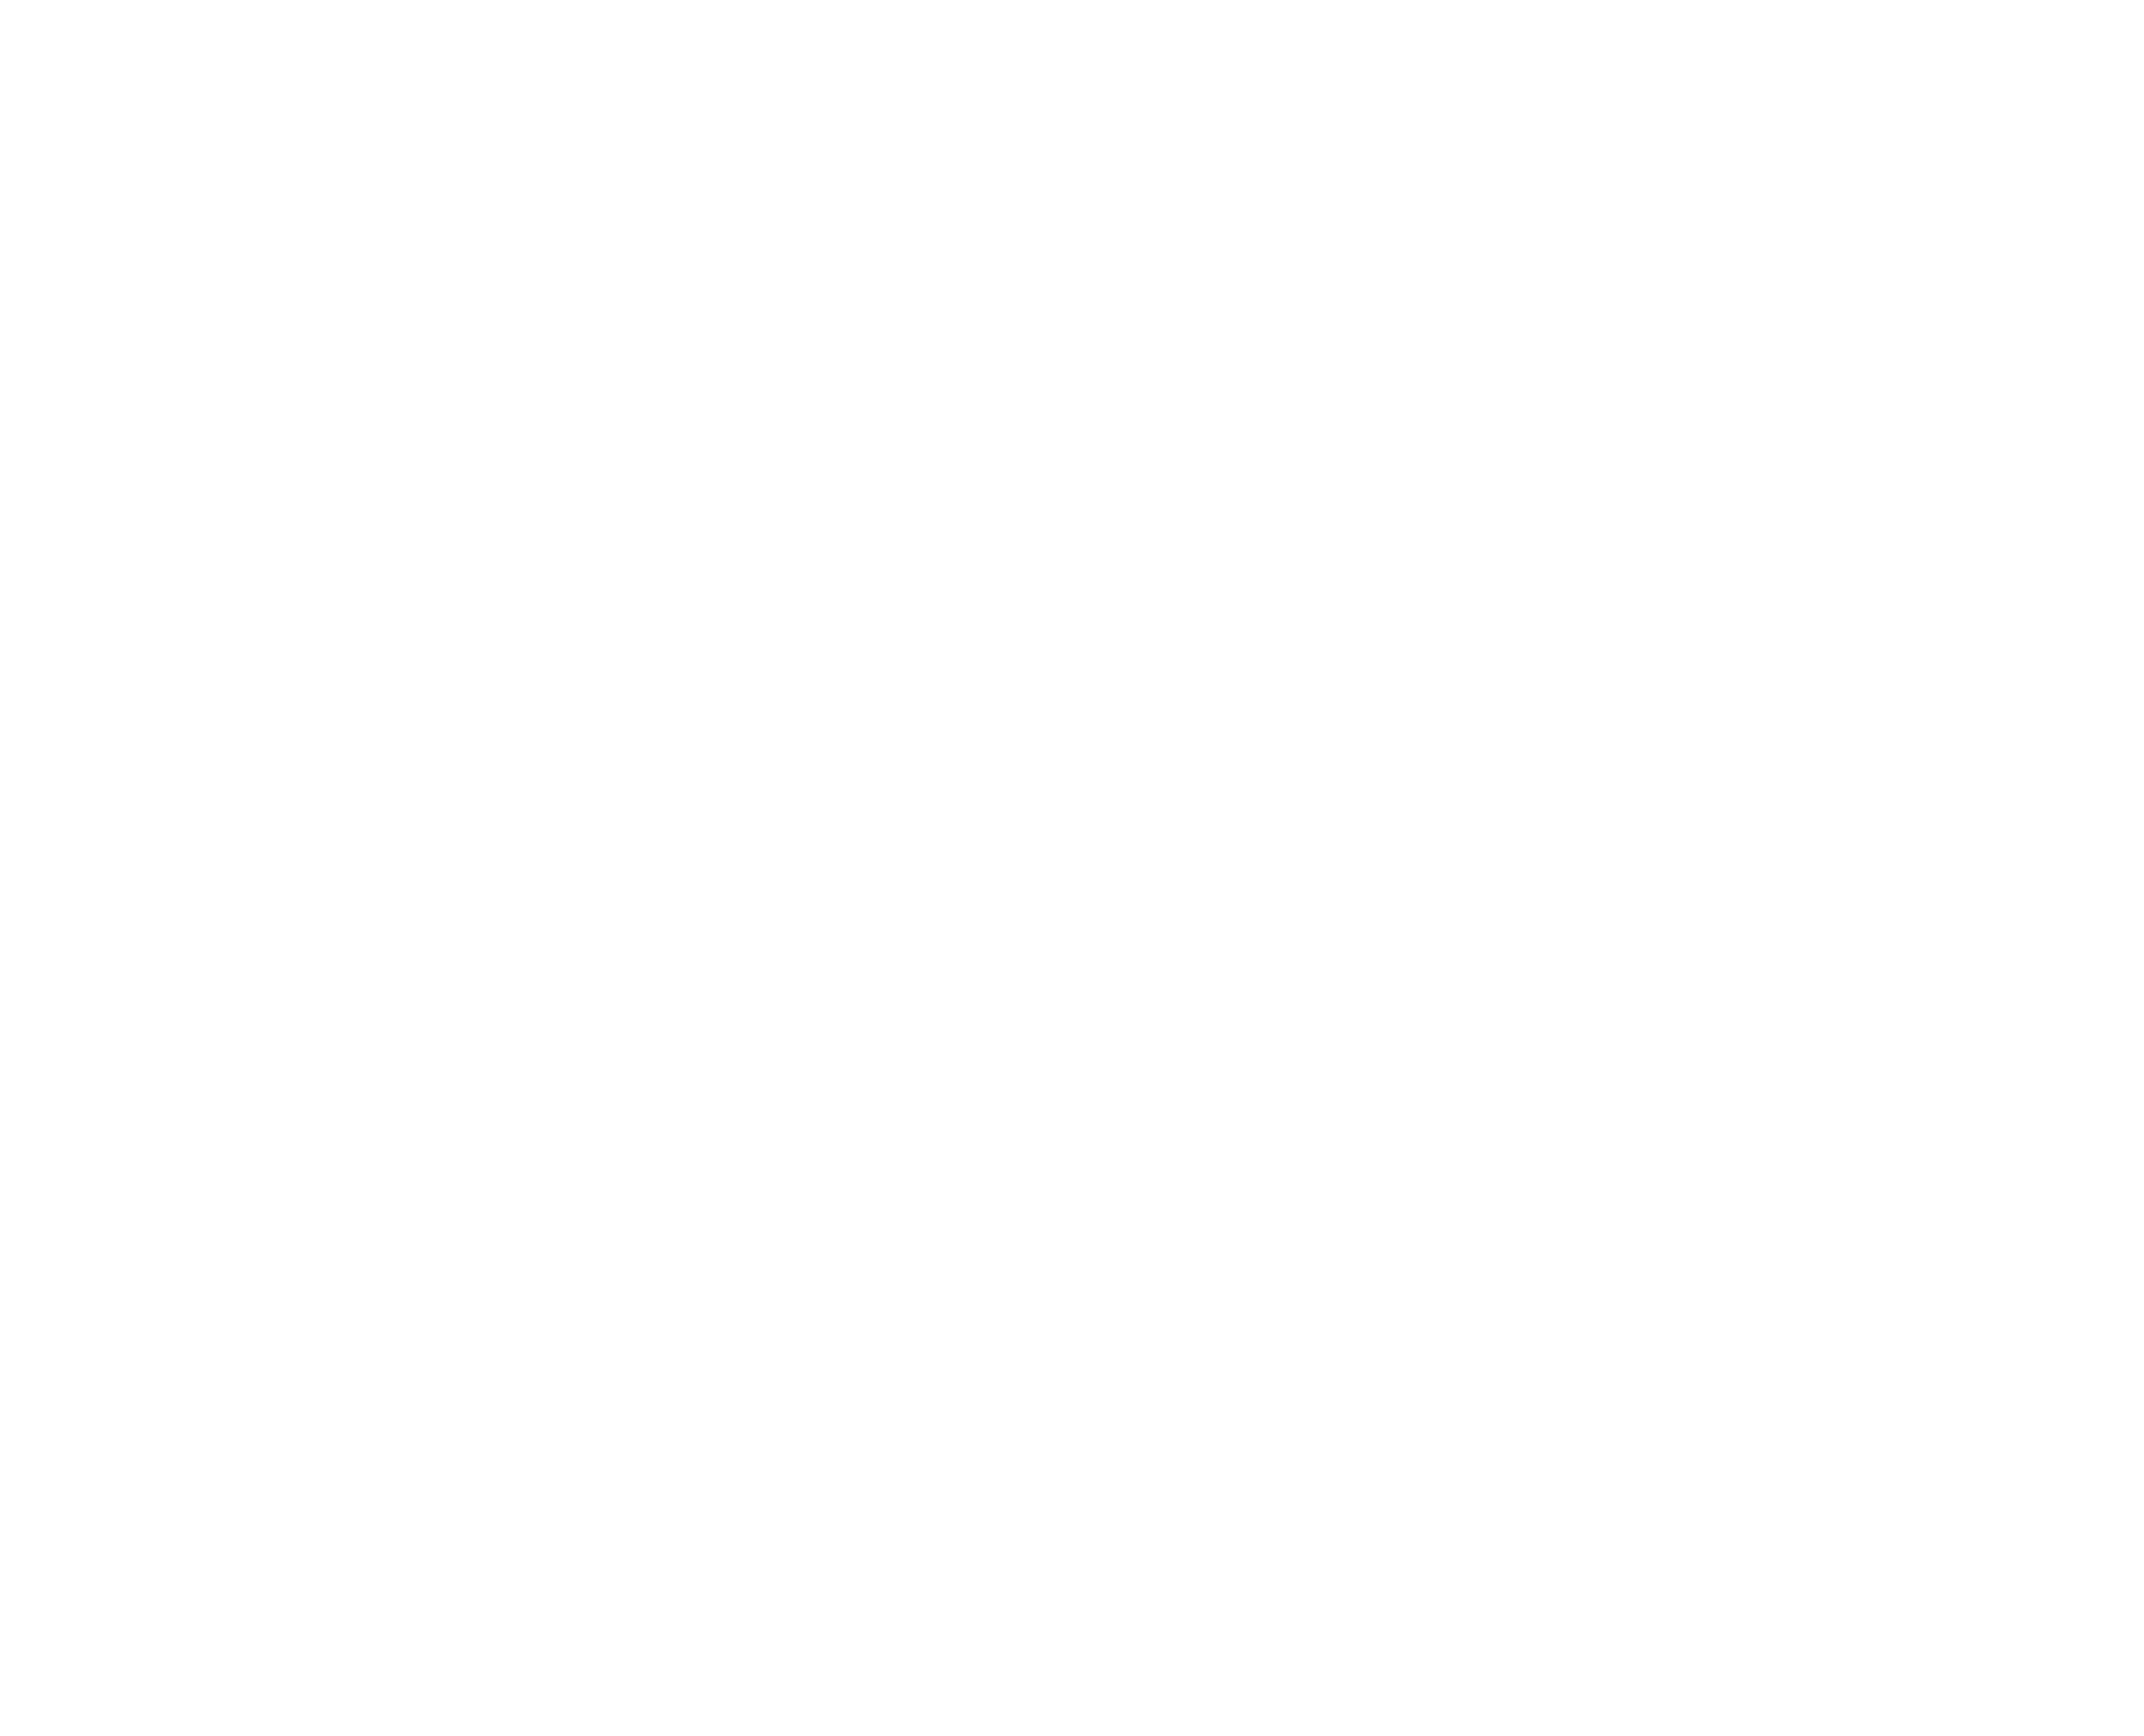 Terra Carta